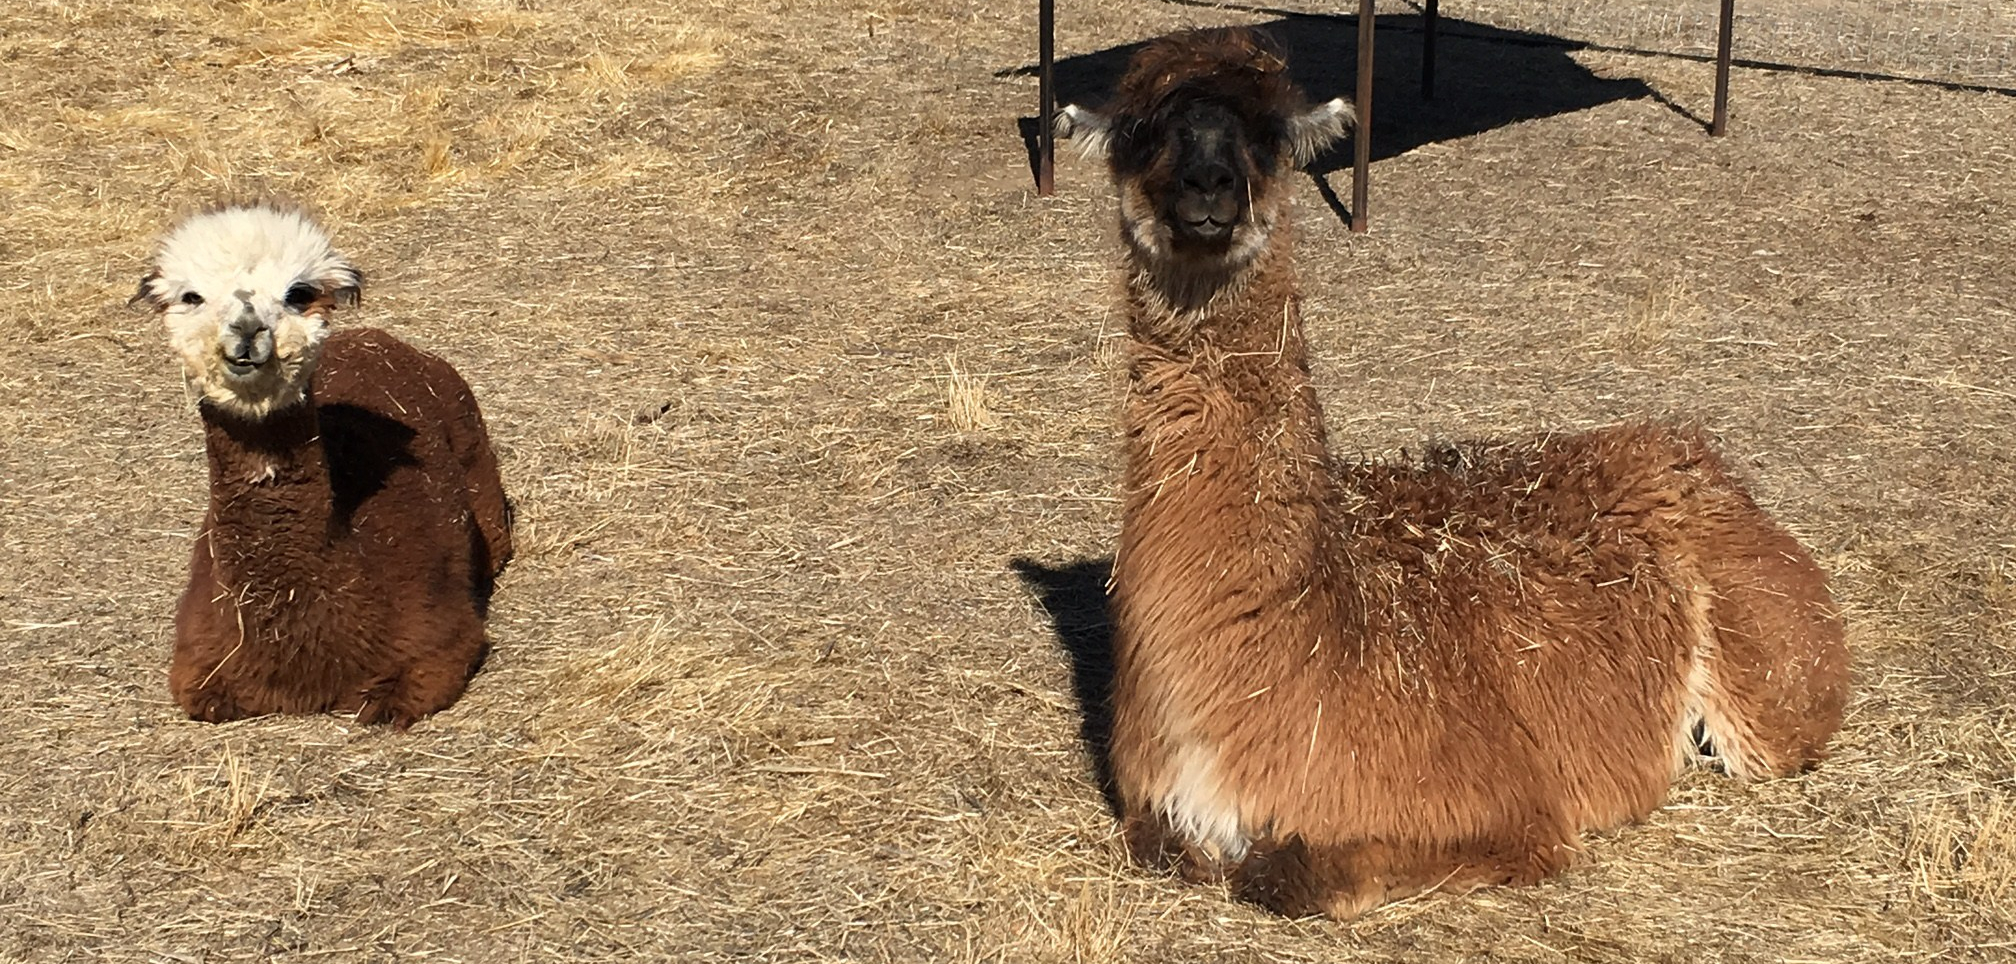 Is it an Alpaca or a Llama?